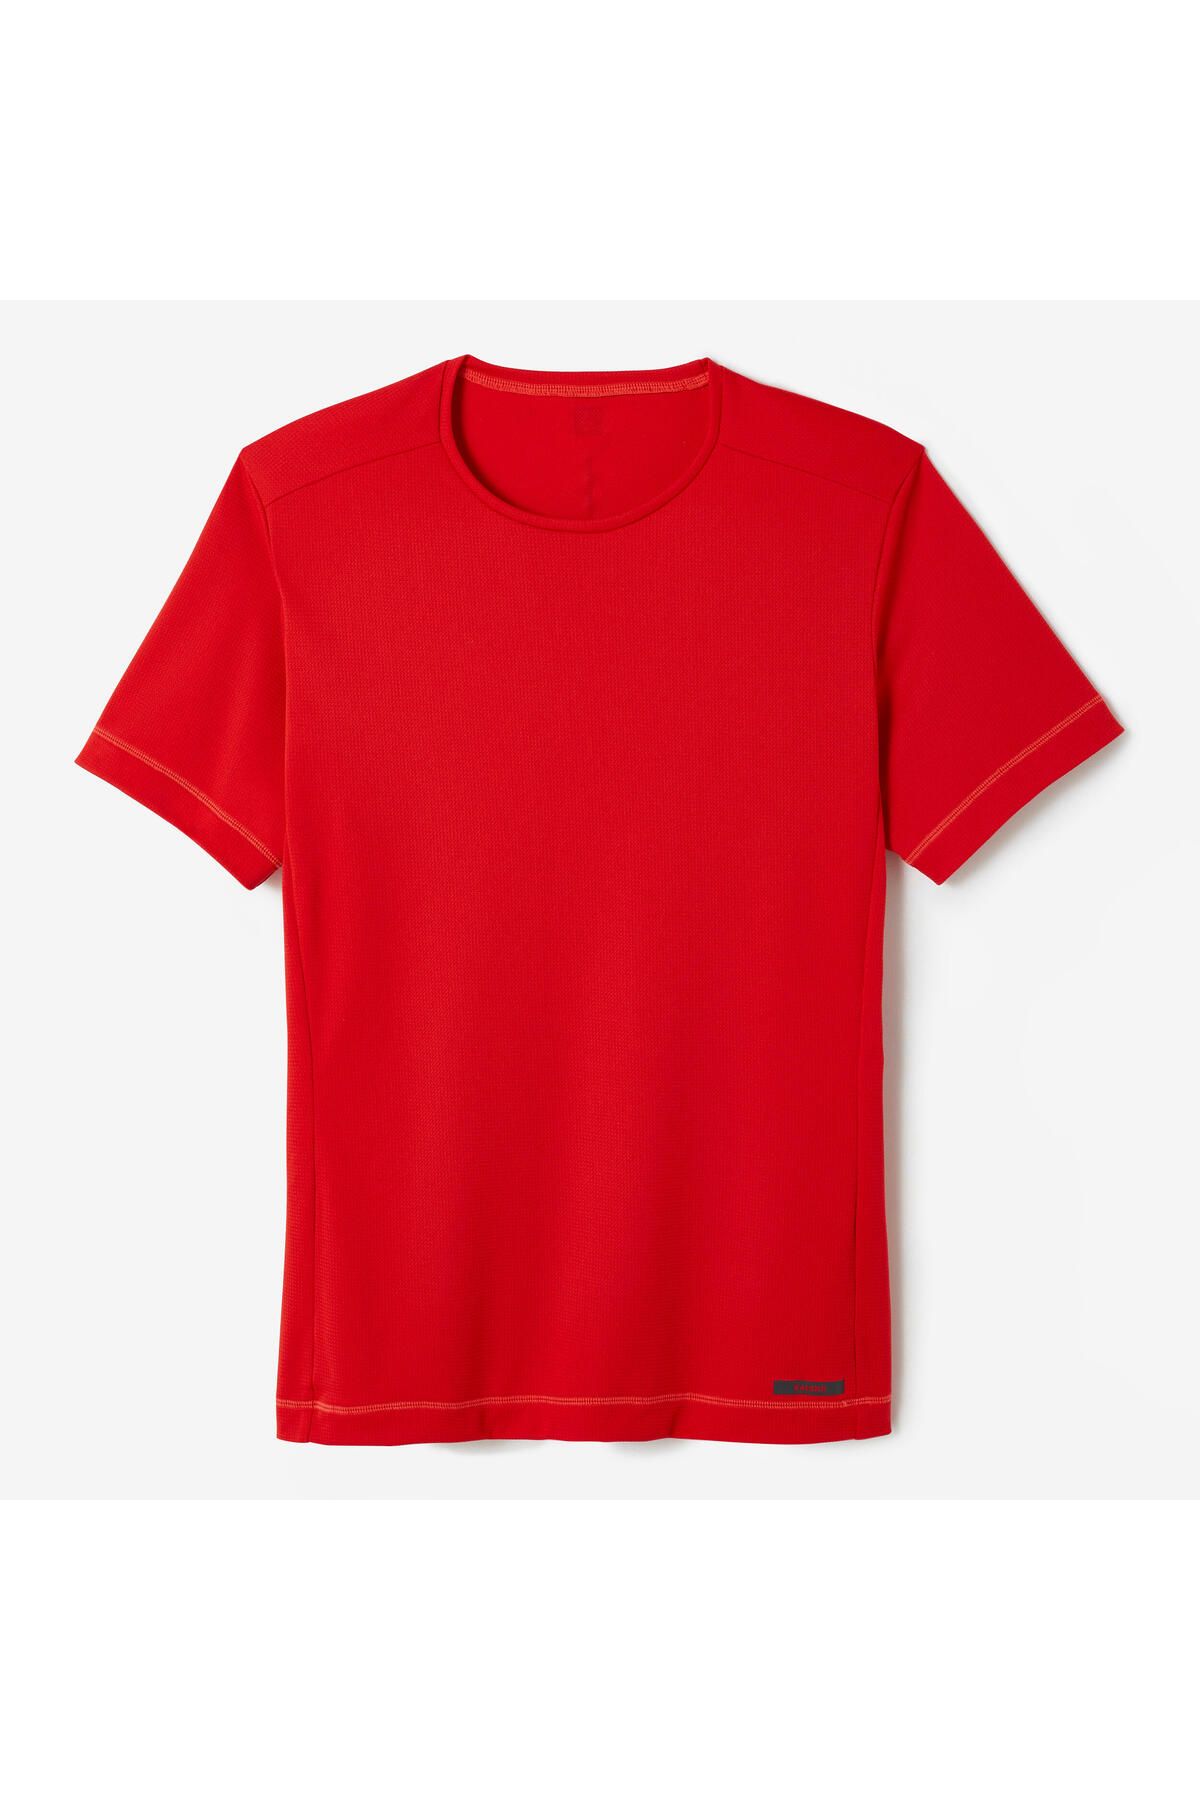 Decathlon Erkek Koşu Tişörtü - Kırmızı